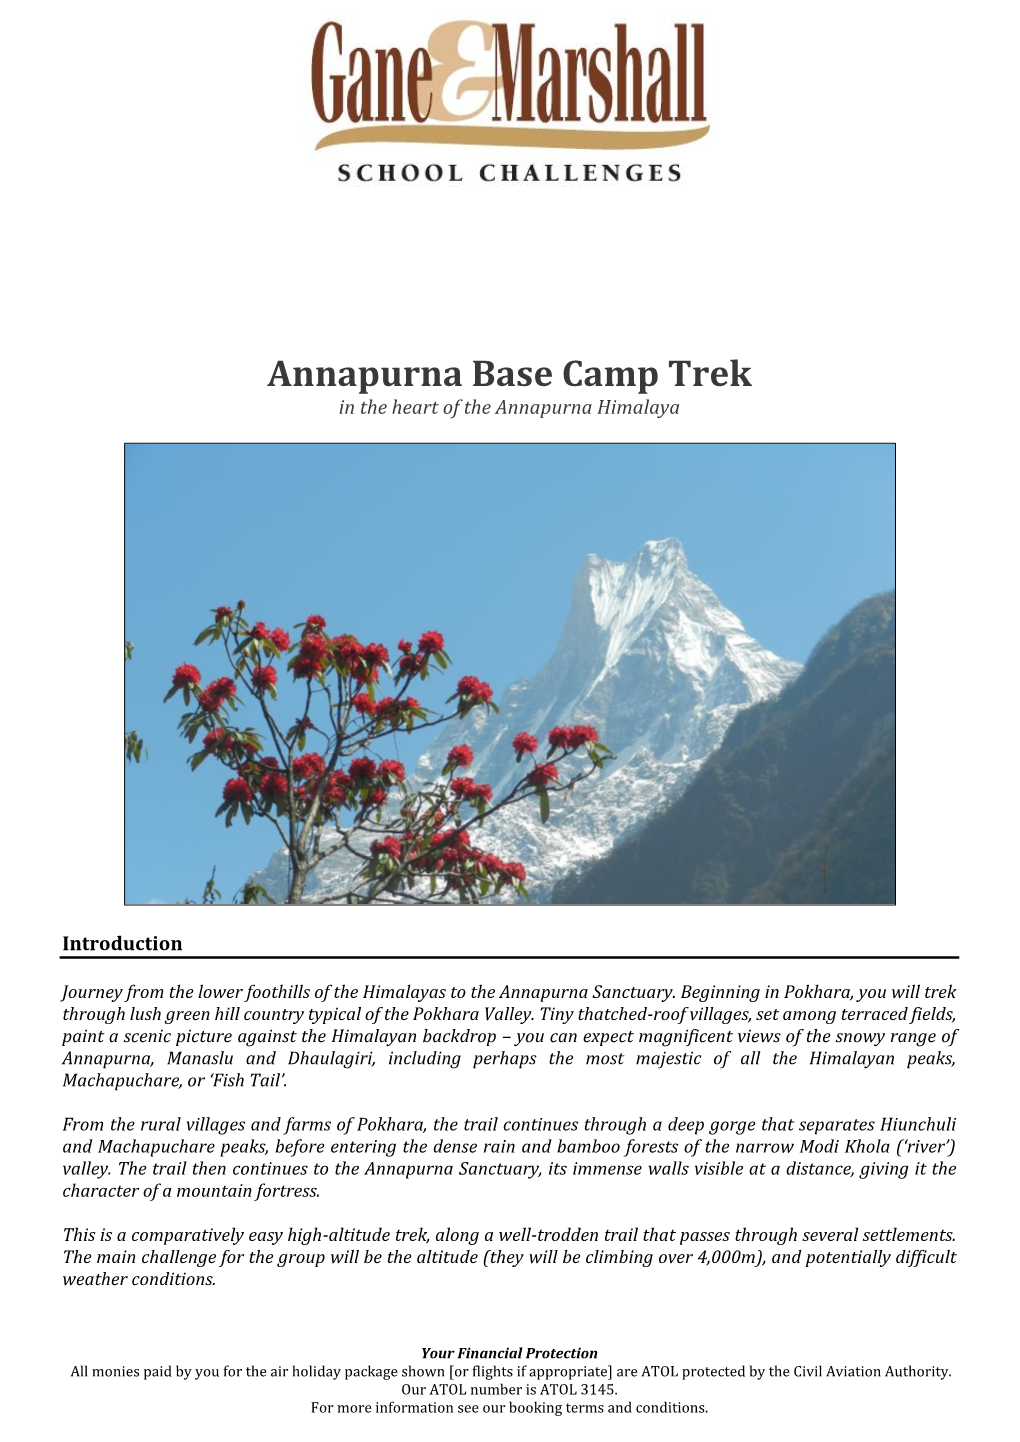 Annapurna Base Camp, Nepal